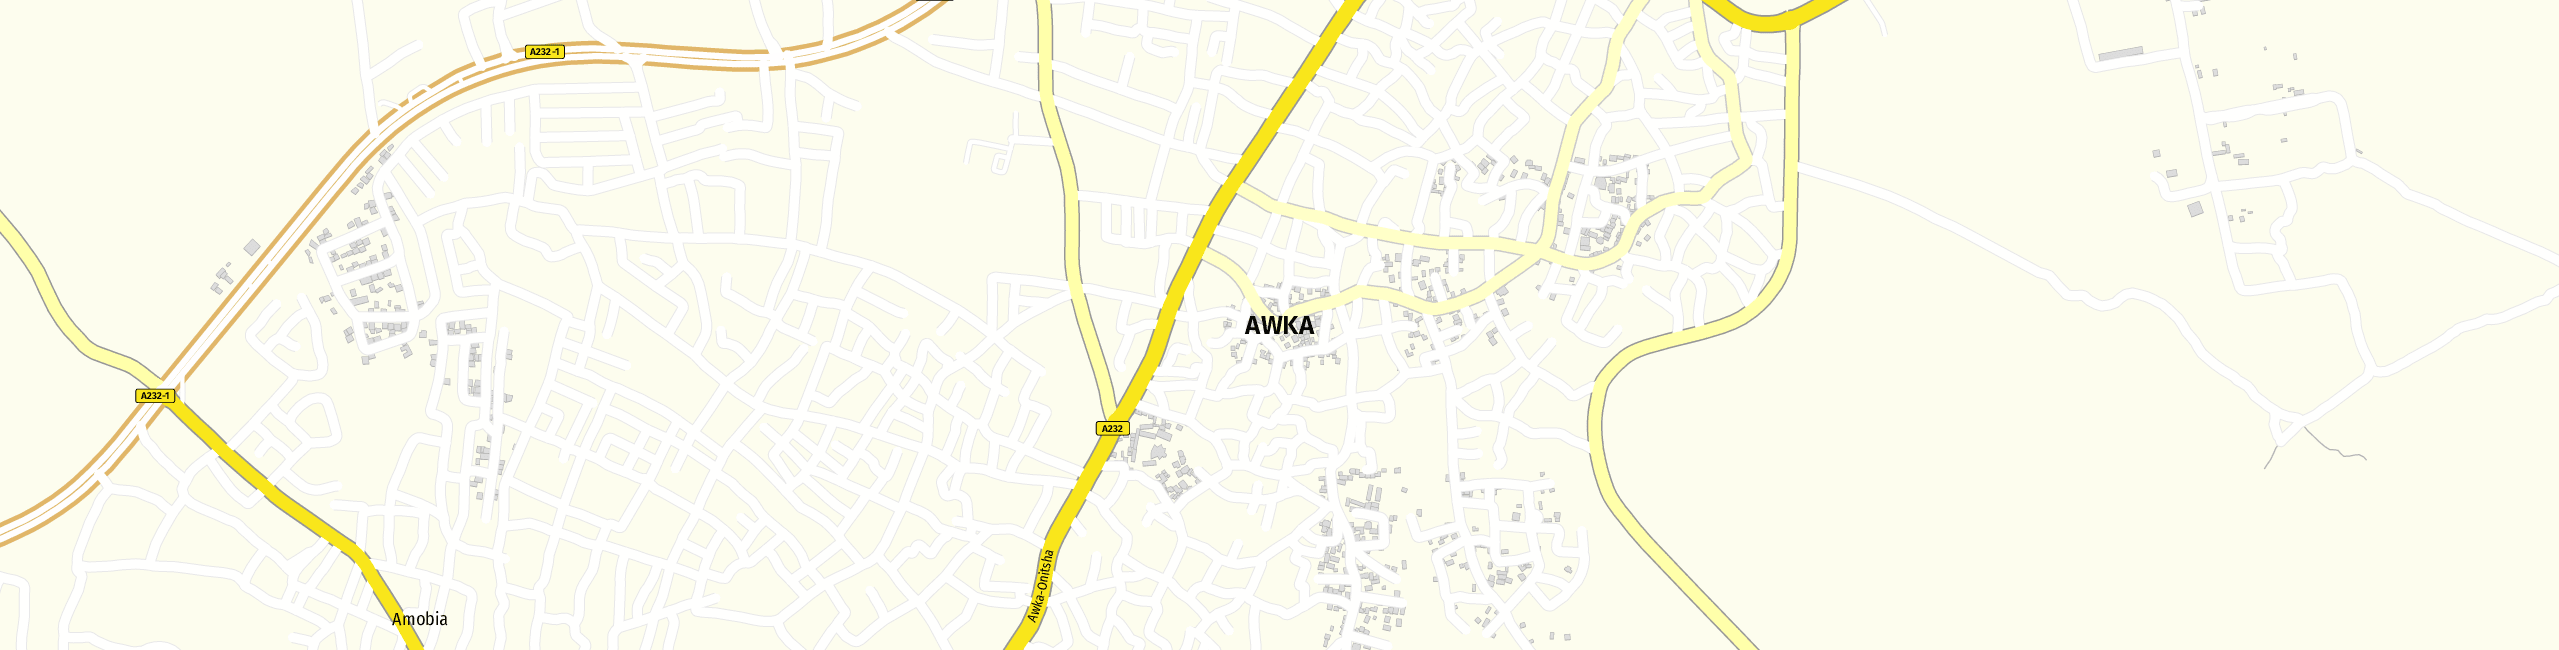 Stadtplan Awka zum Downloaden.